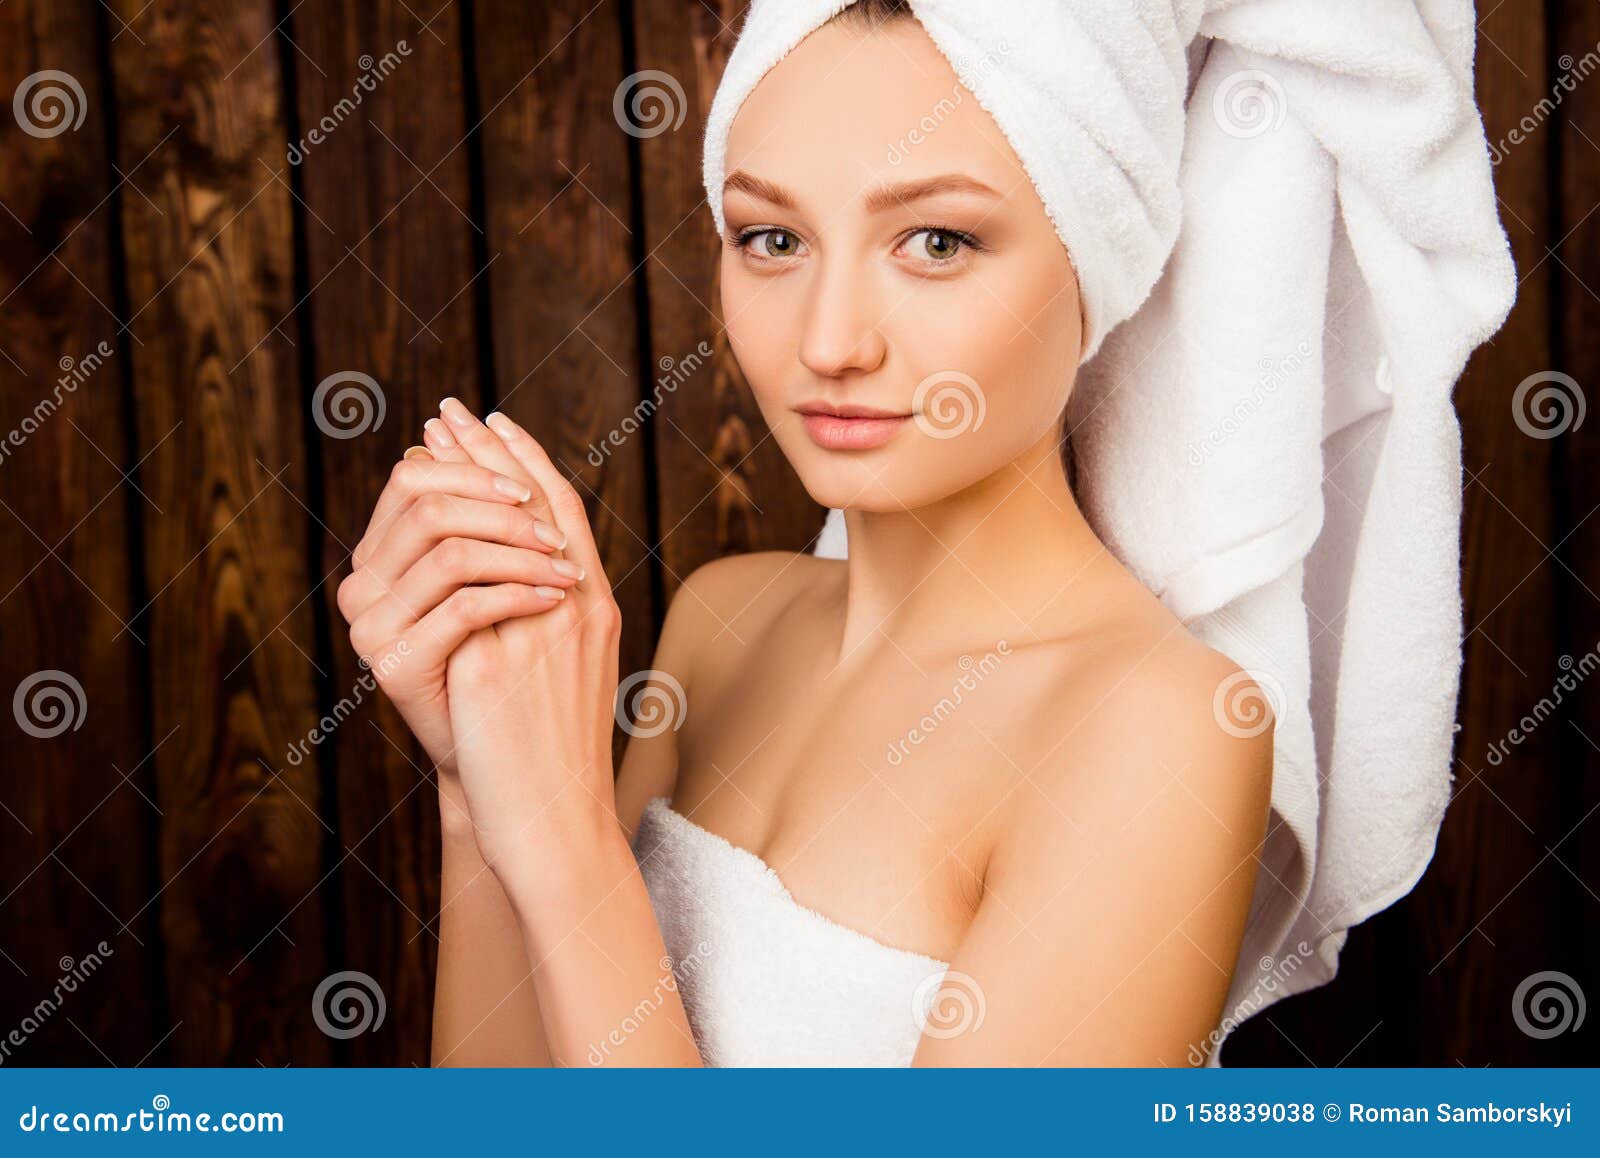 Девочка в полотенце